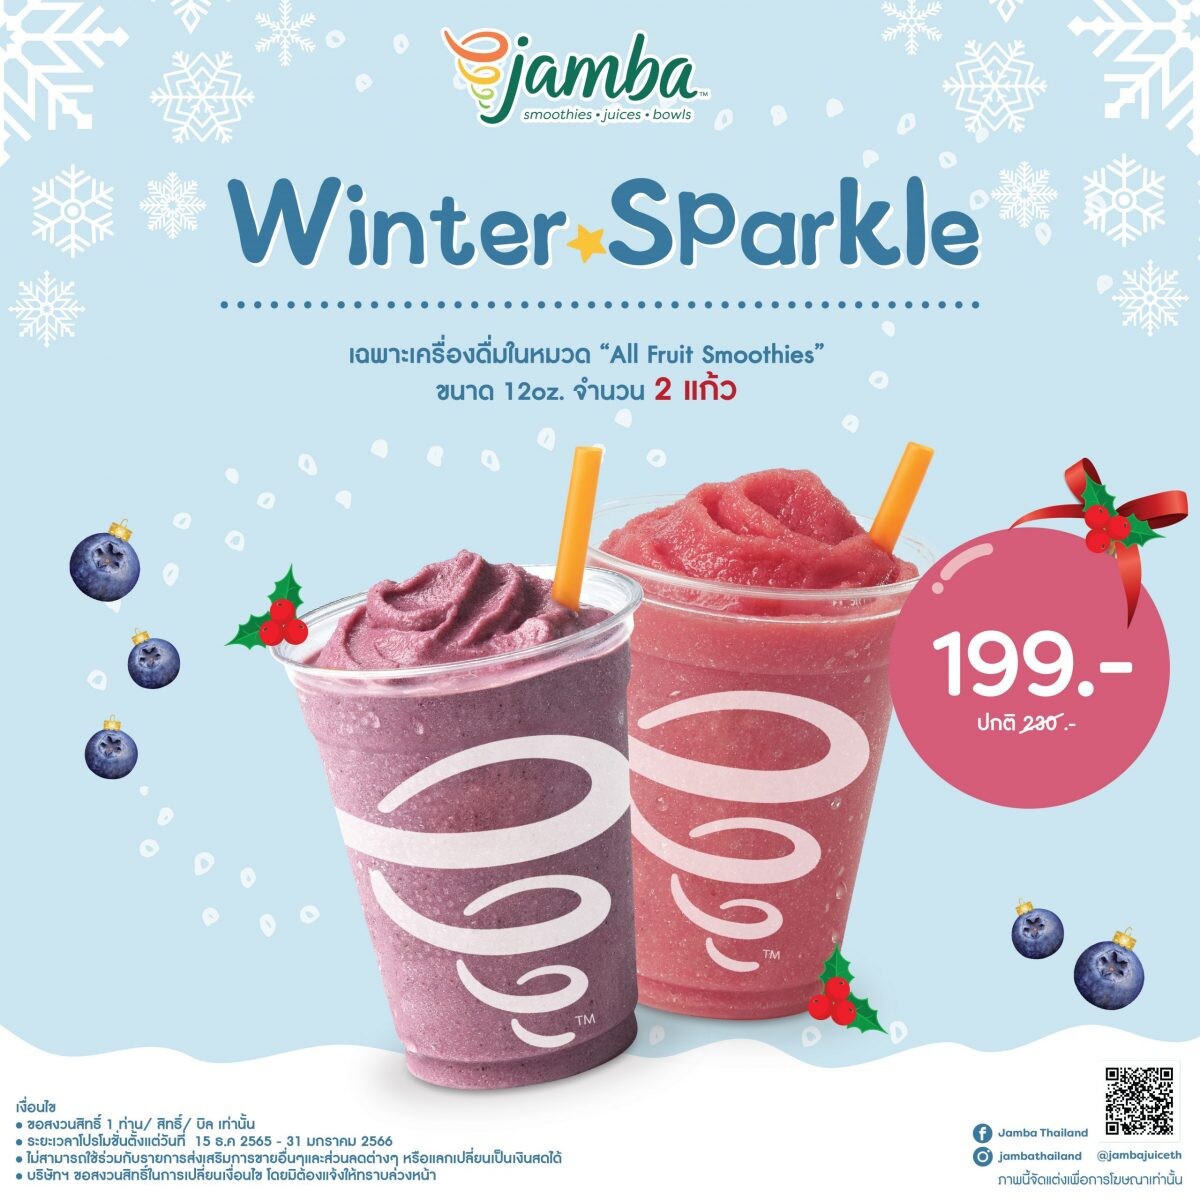 ต้อนรับลมหนาวส่งท้ายปีกับ "Jamba Winter Sparkle"